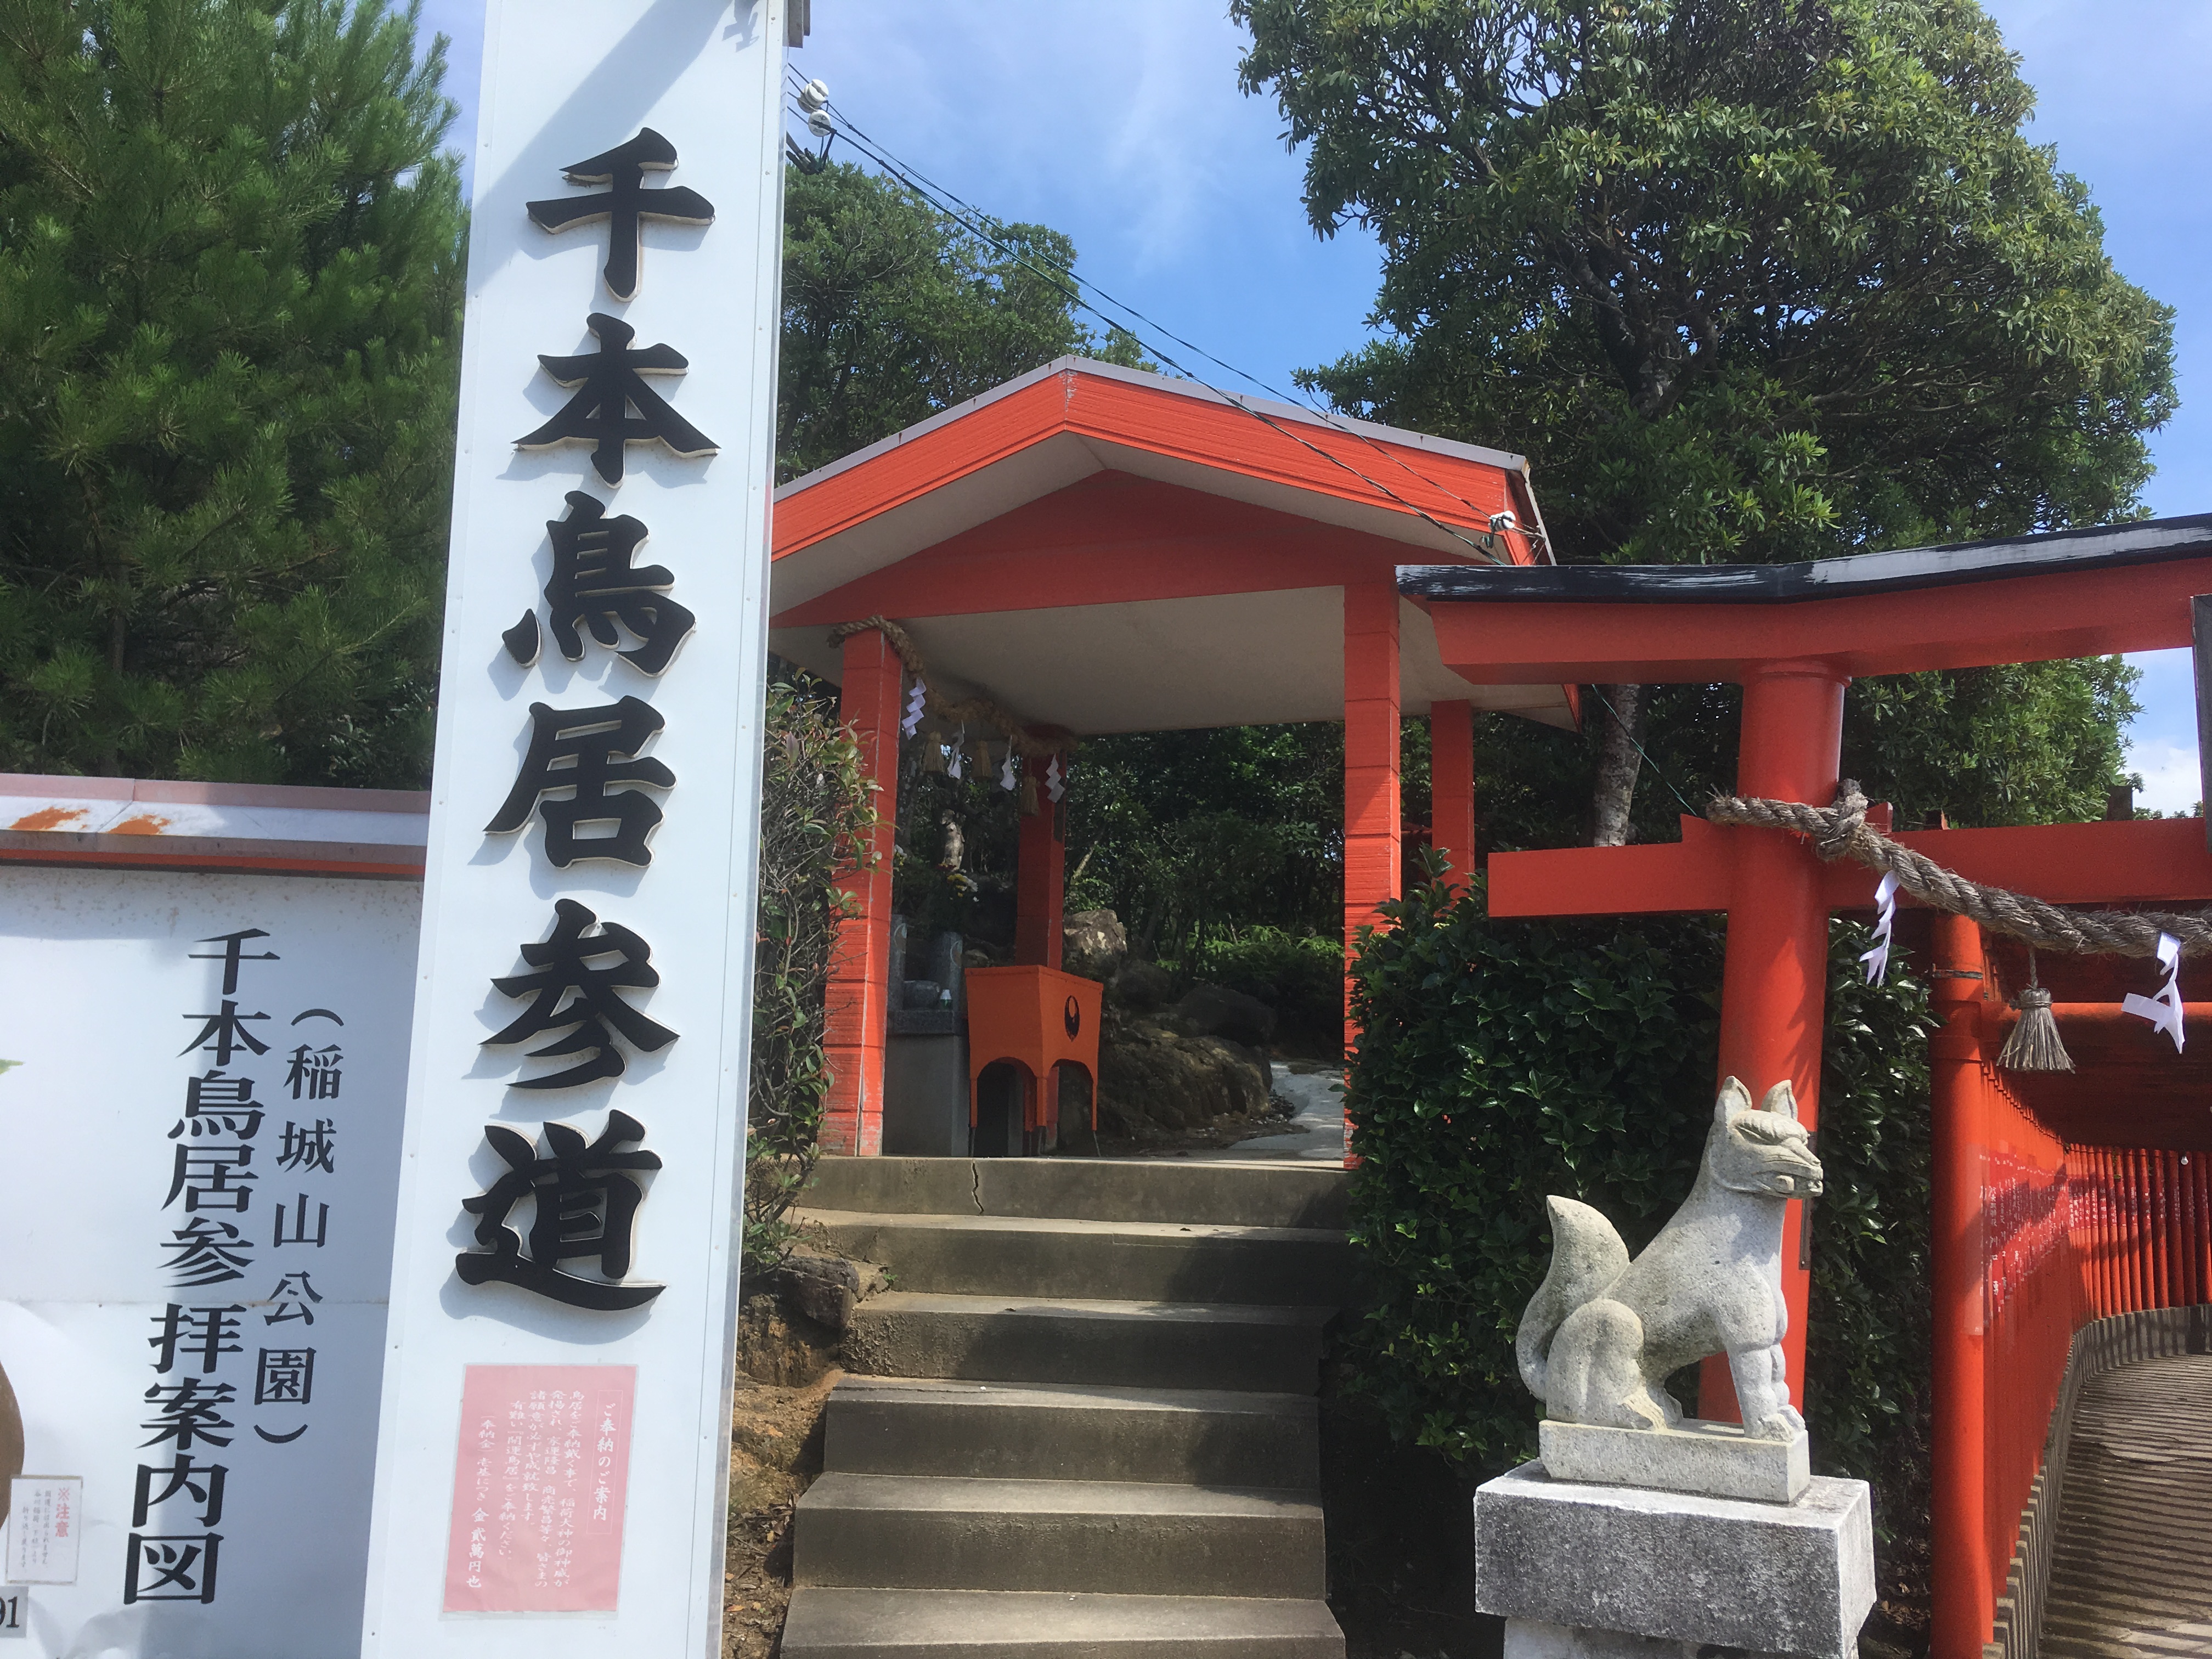 山口県下関市の福徳稲荷神社に参拝に行きました。